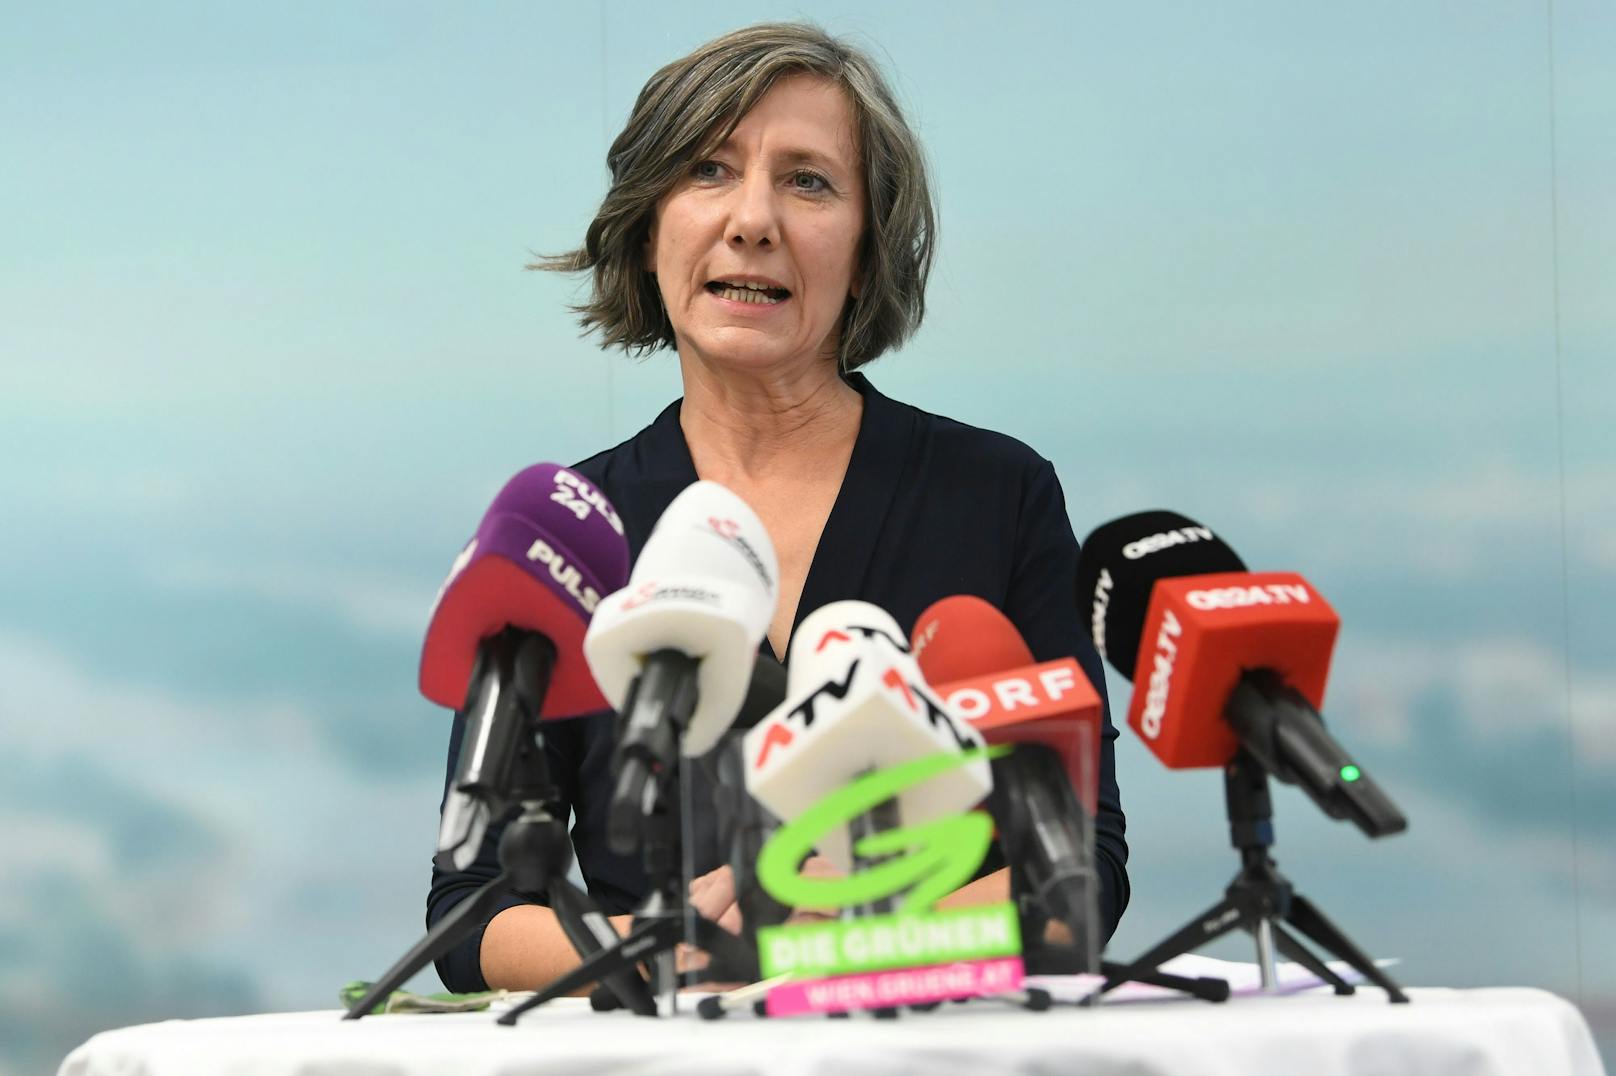 Bis Ende 2021 ist die noch amtierende Wiener Vizebürgermeisterin Birgit Hebein als grüne Parteivorsitzende gewählt worden.